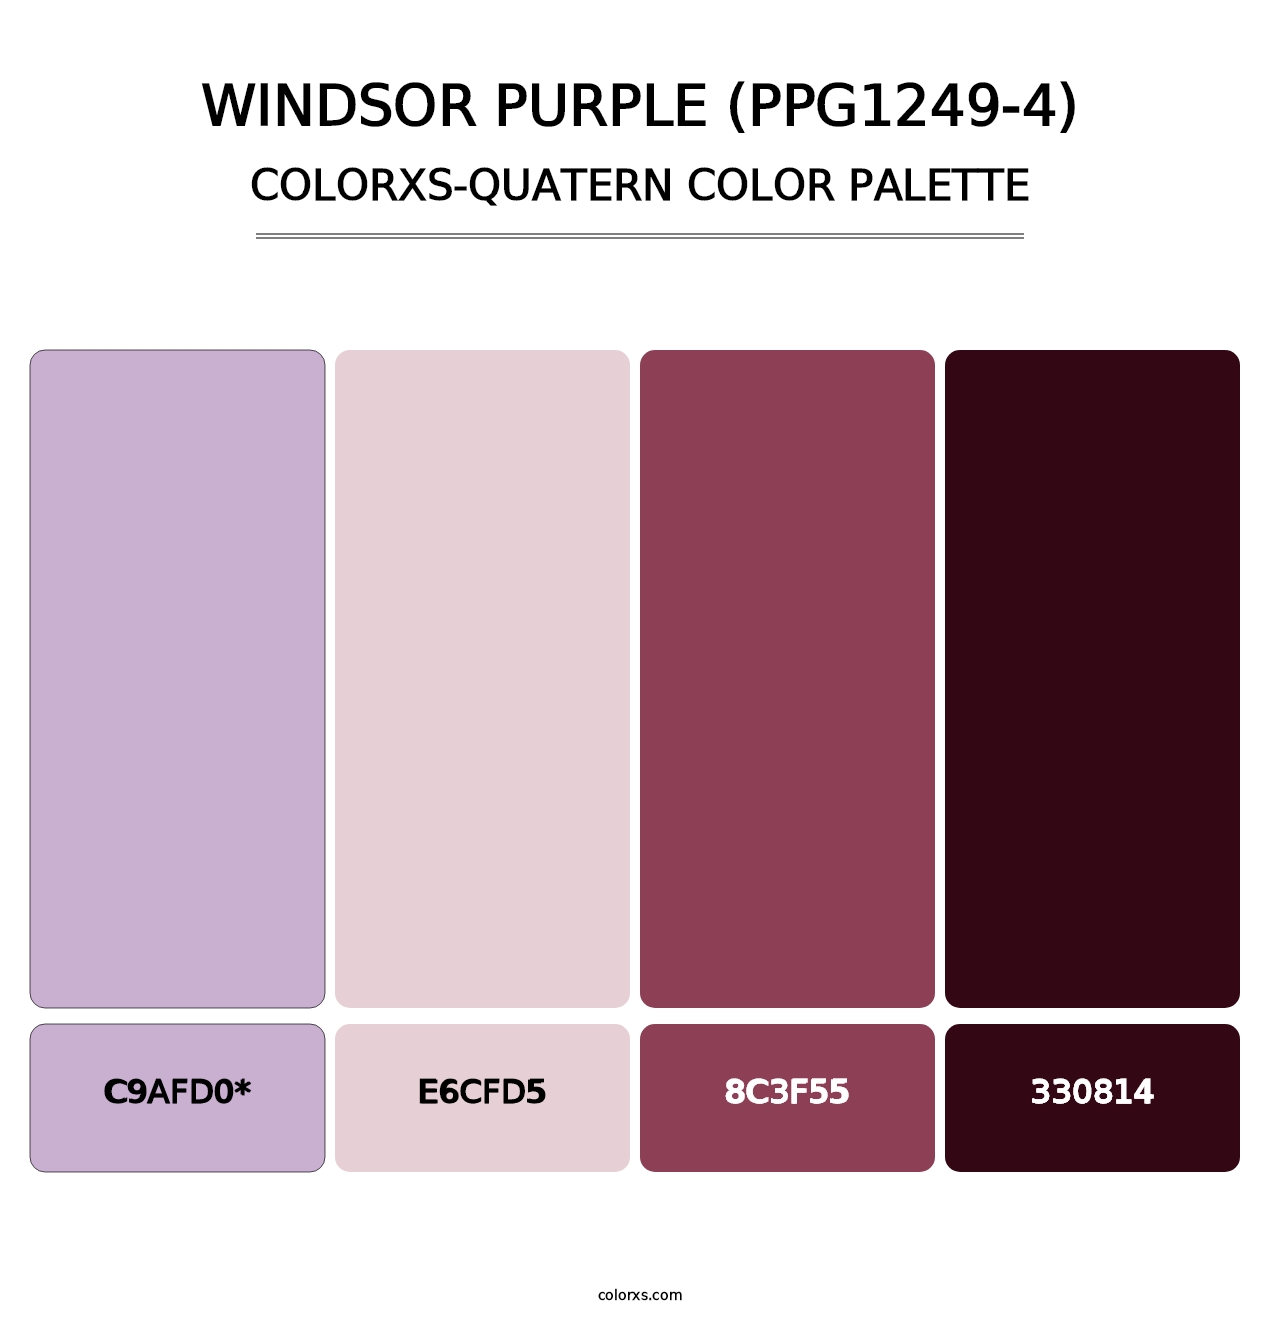 Windsor Purple (PPG1249-4) - Colorxs Quatern Palette